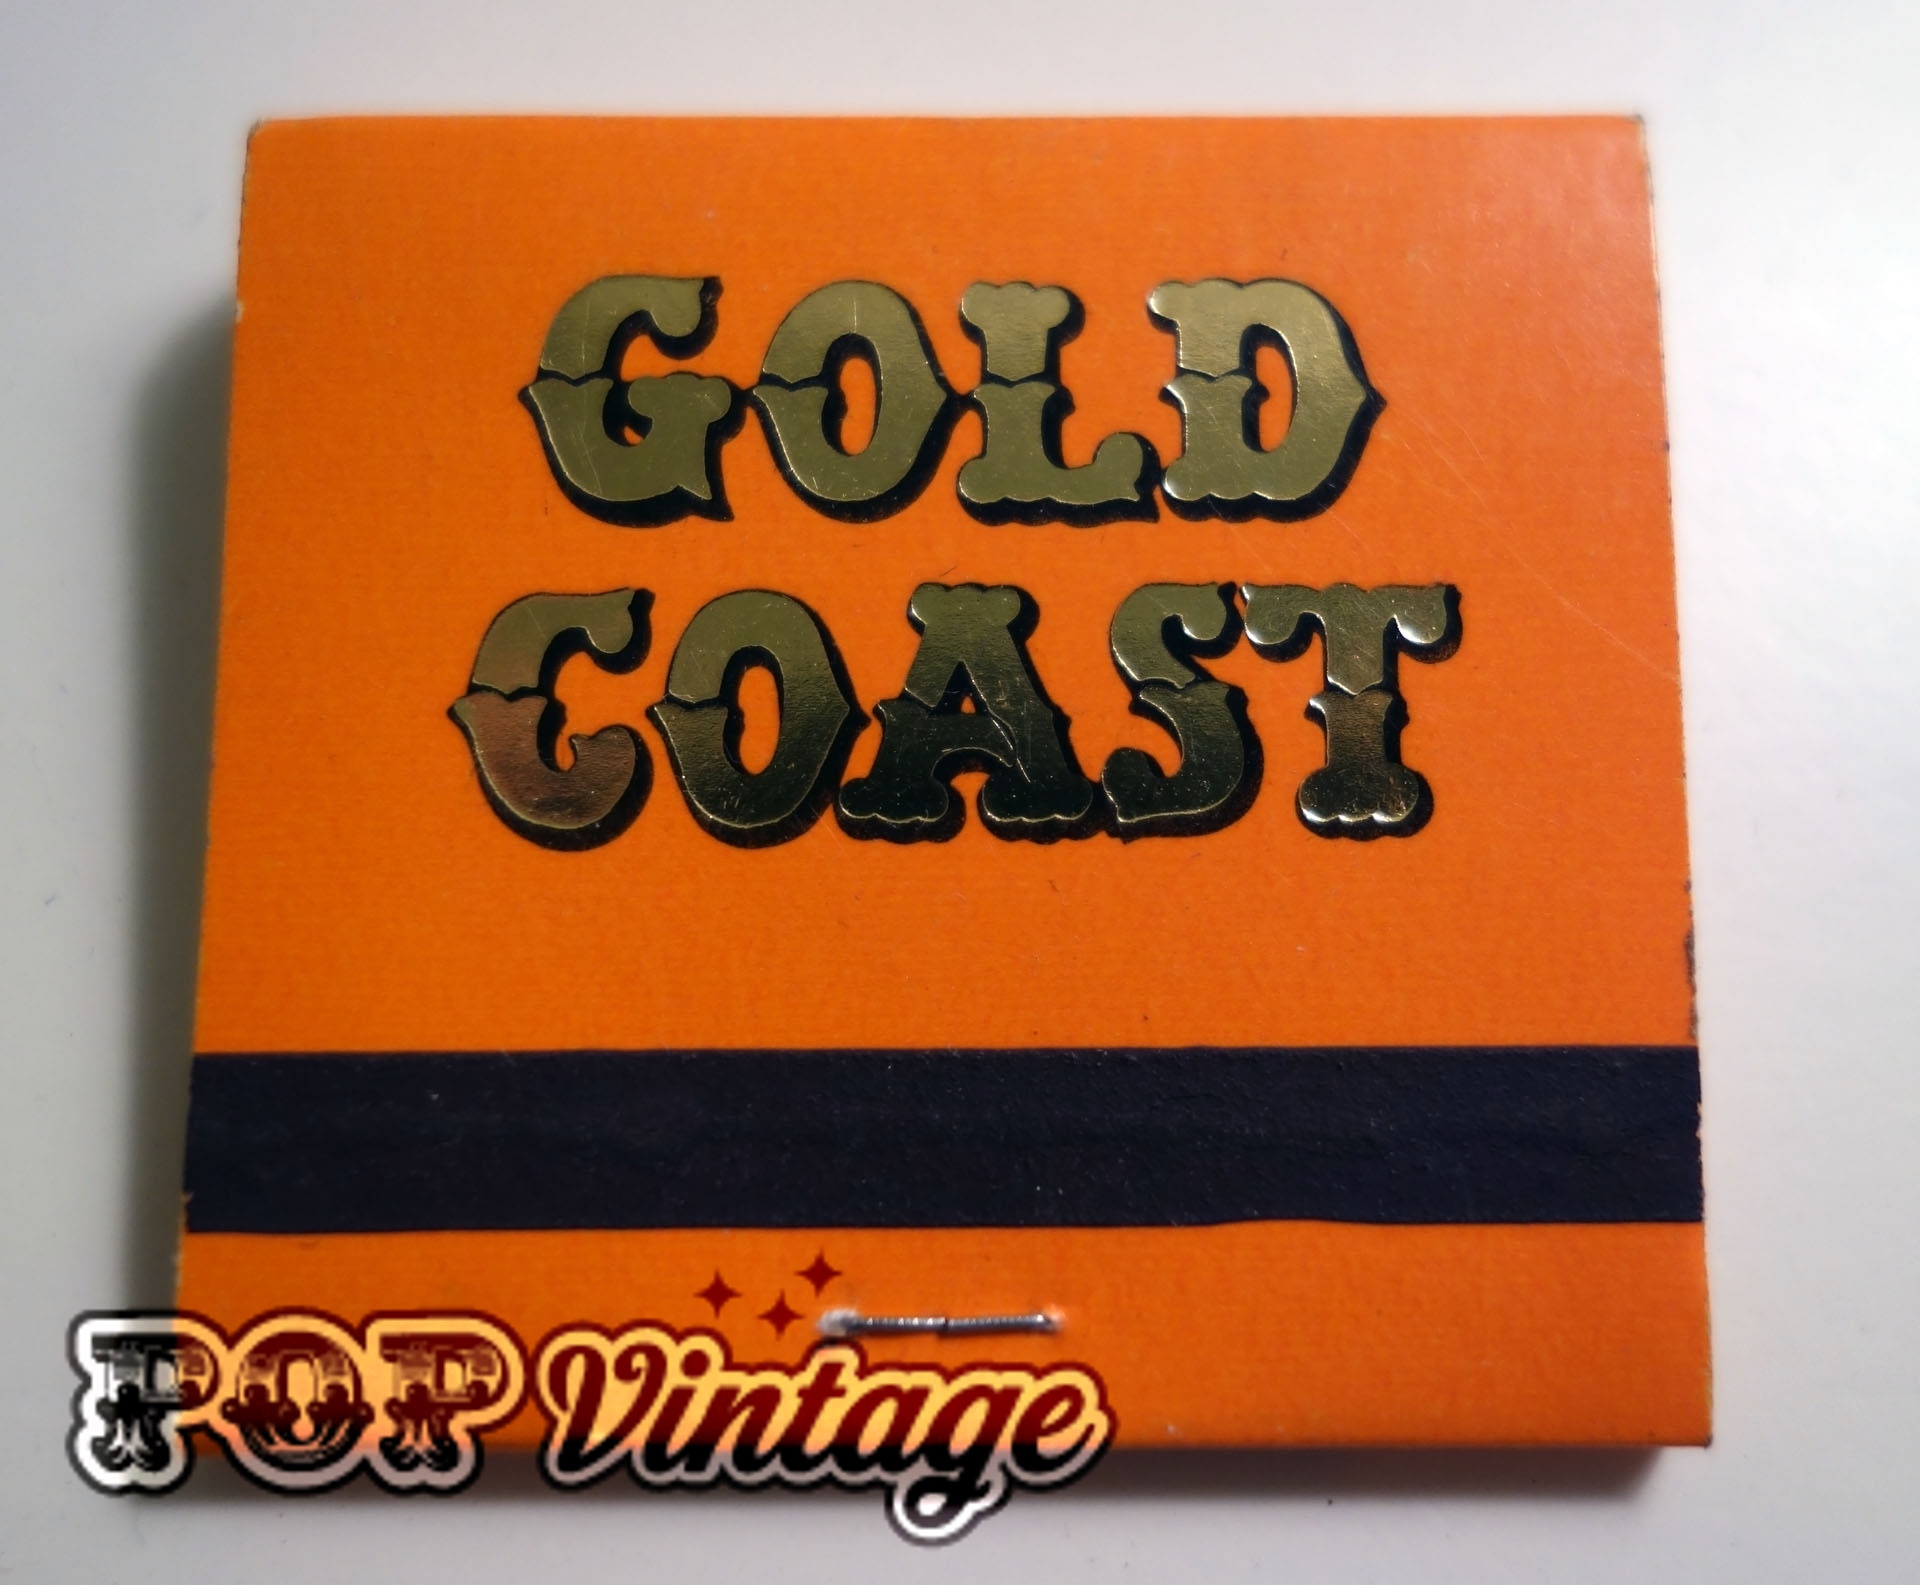 Vintage Vegas Matchbook – Gold Coast